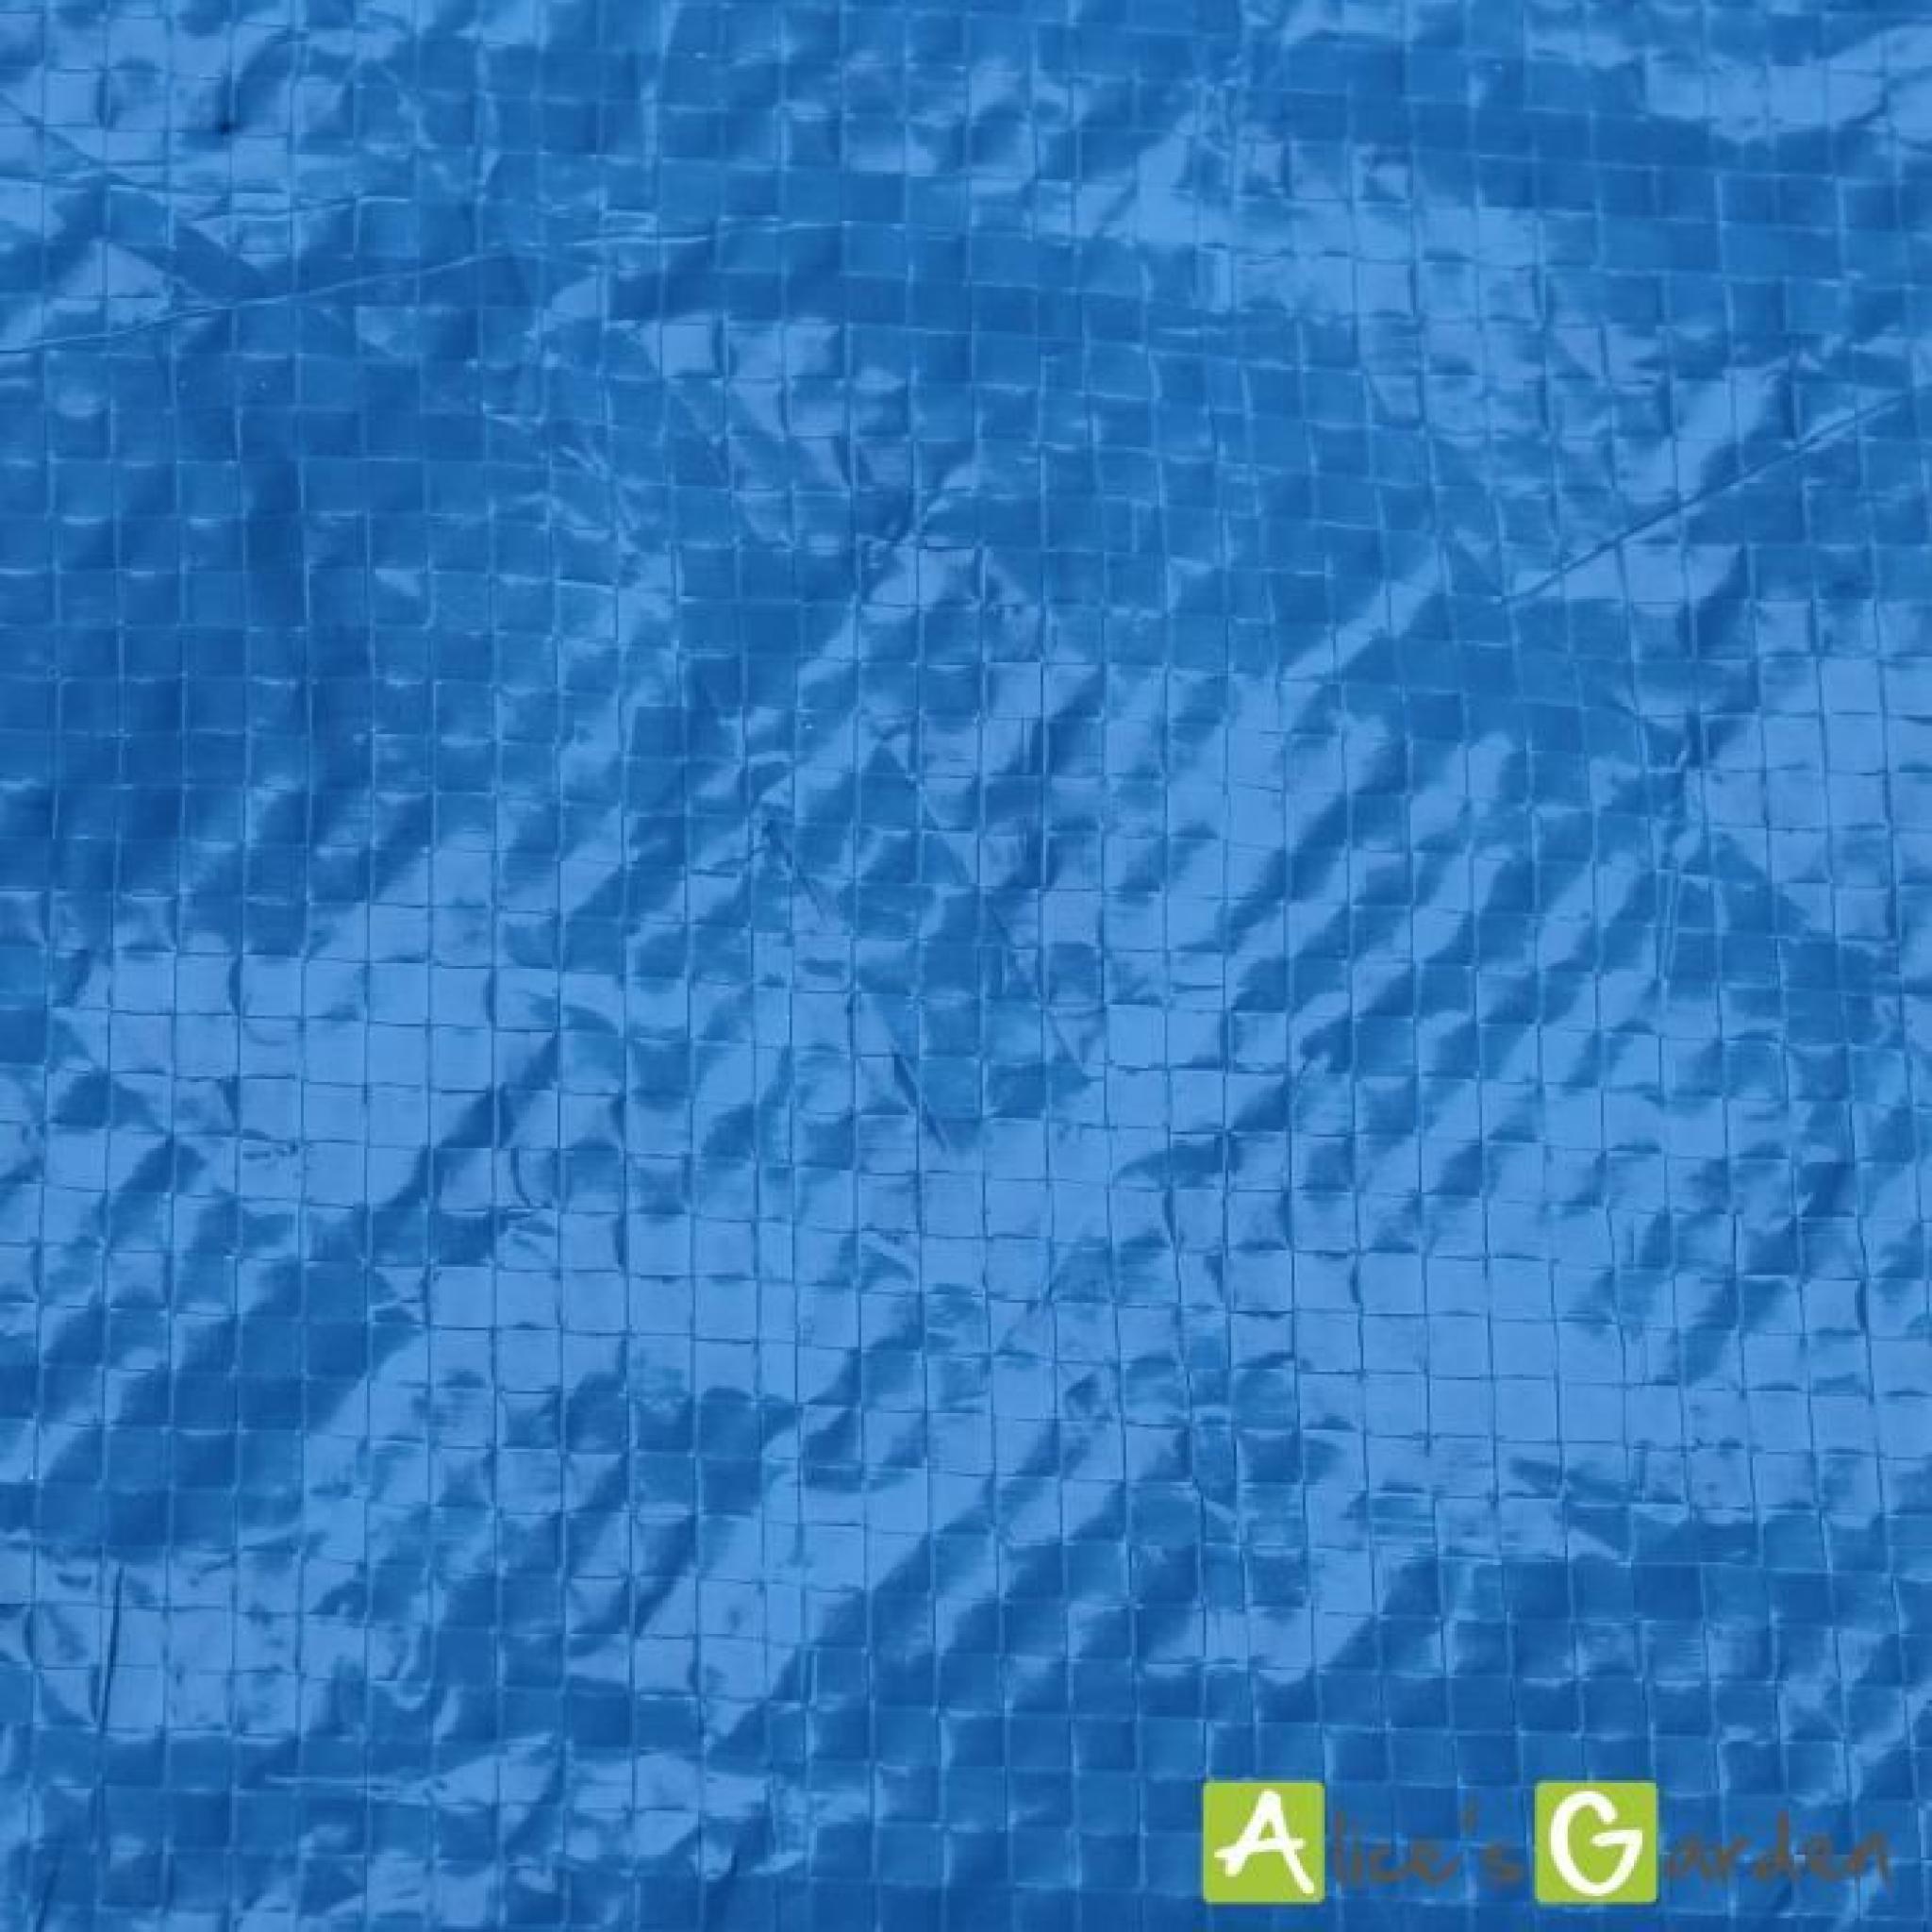 Tapis de sol bleu 390 x 390 cm pour piscine ronde hors sol Ø 360cm, bâche, couverture, protection sol pas cher